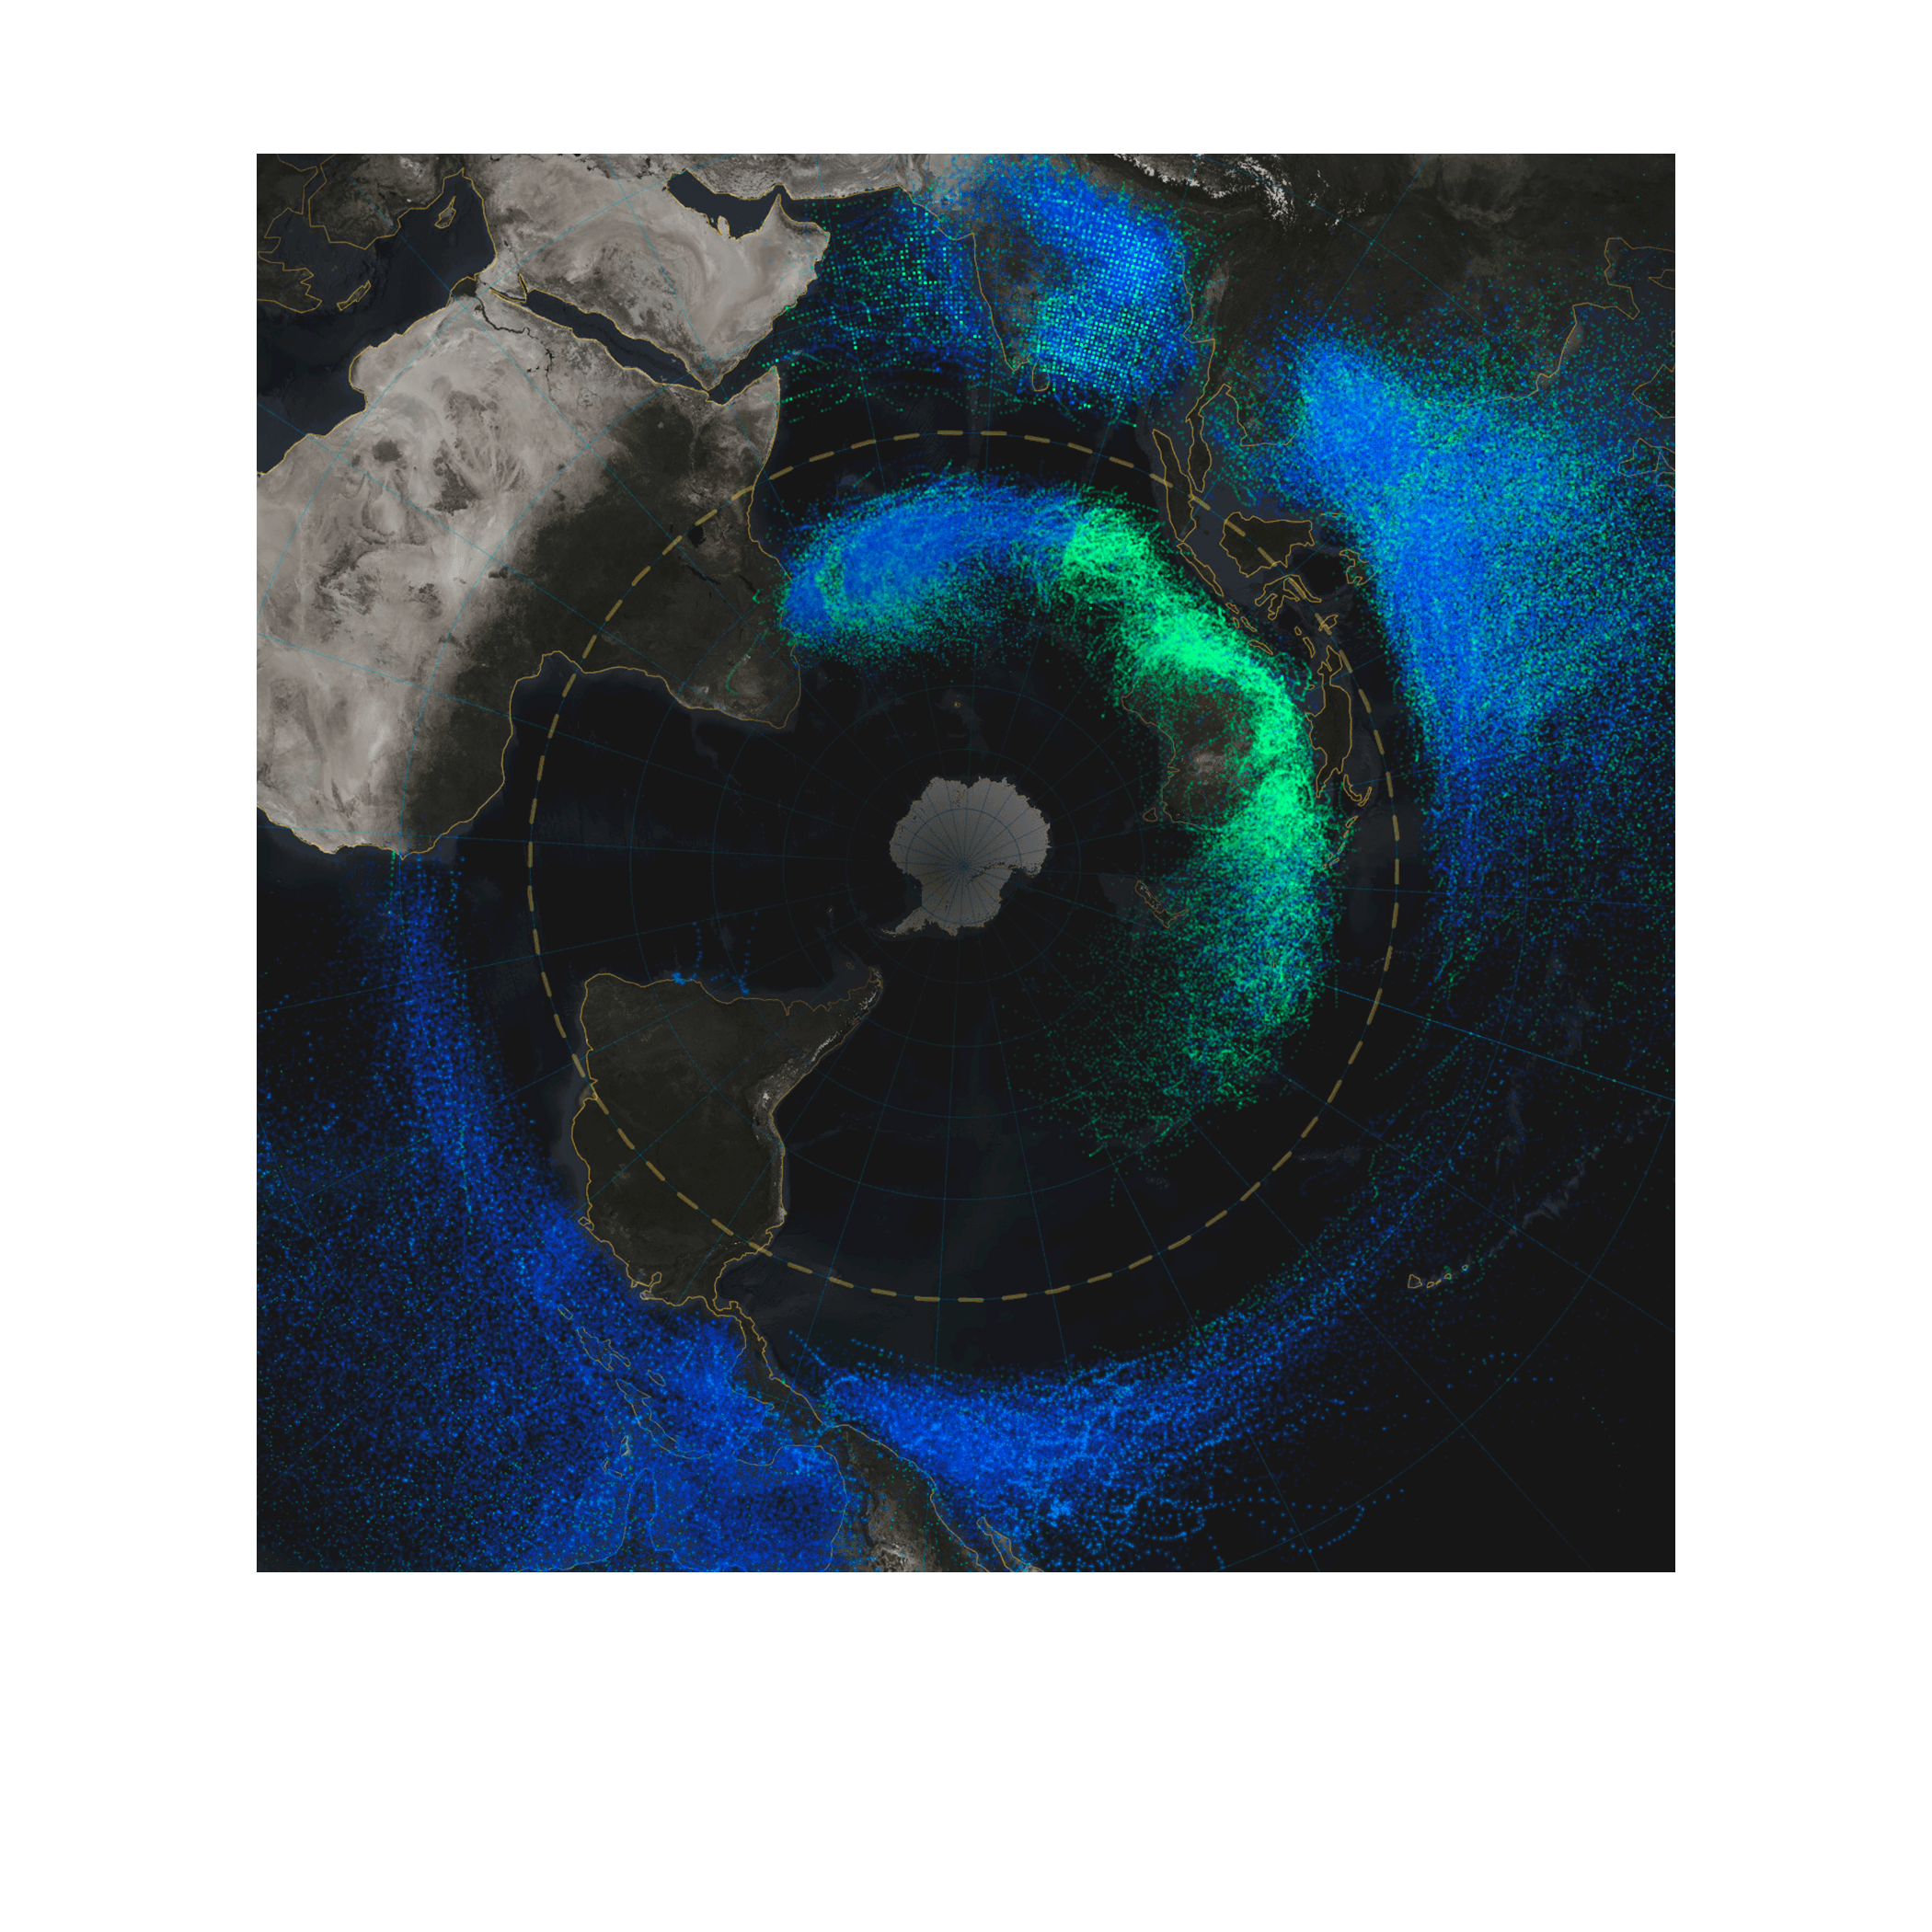 南半球的地图显示，南极洲周围存在一个蓝色和绿色的发光环，其表示自 1851 年以来飓风和热带风暴的路径